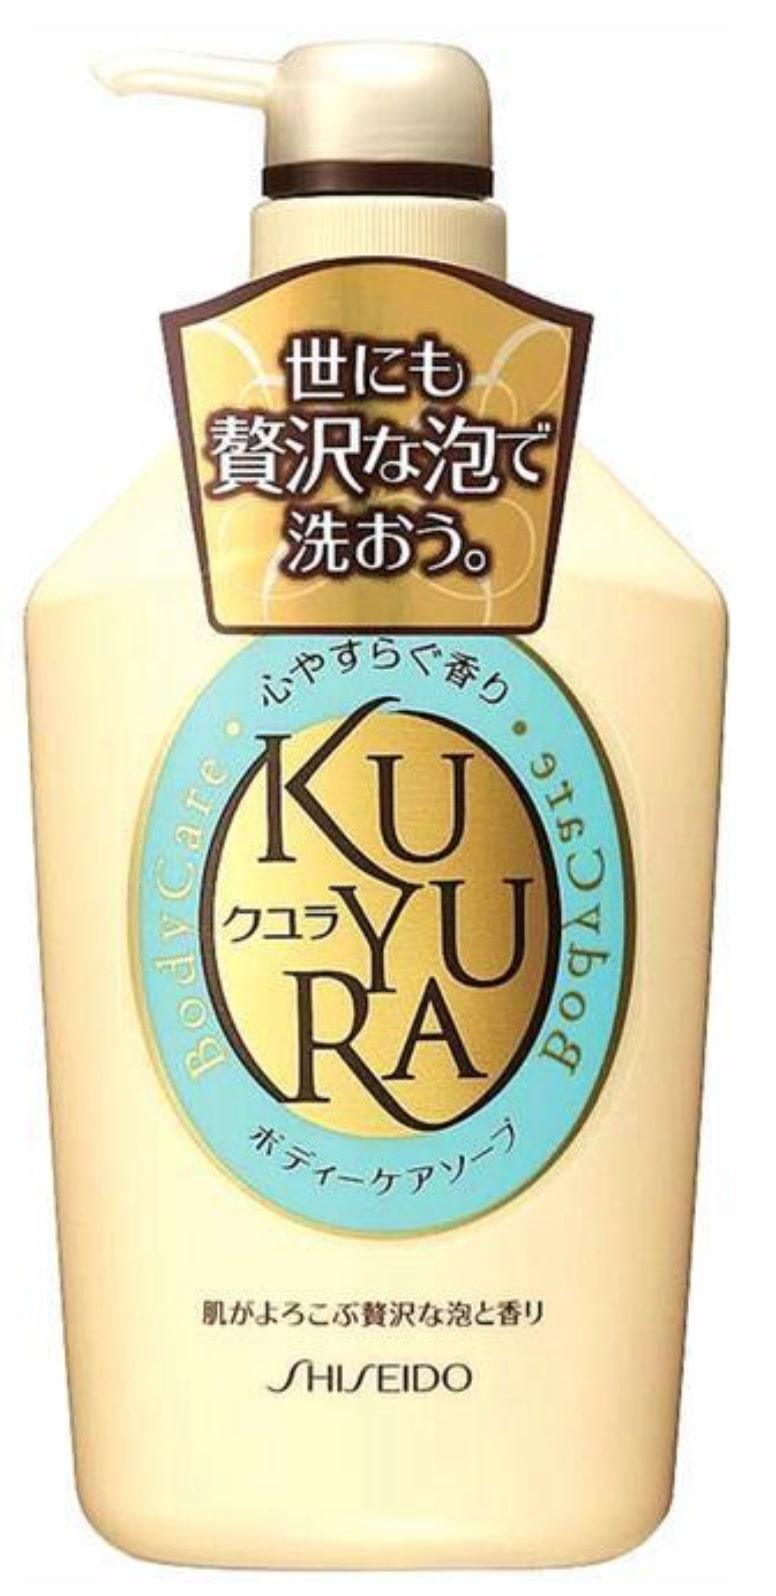 shishido-kuyura-body-soap